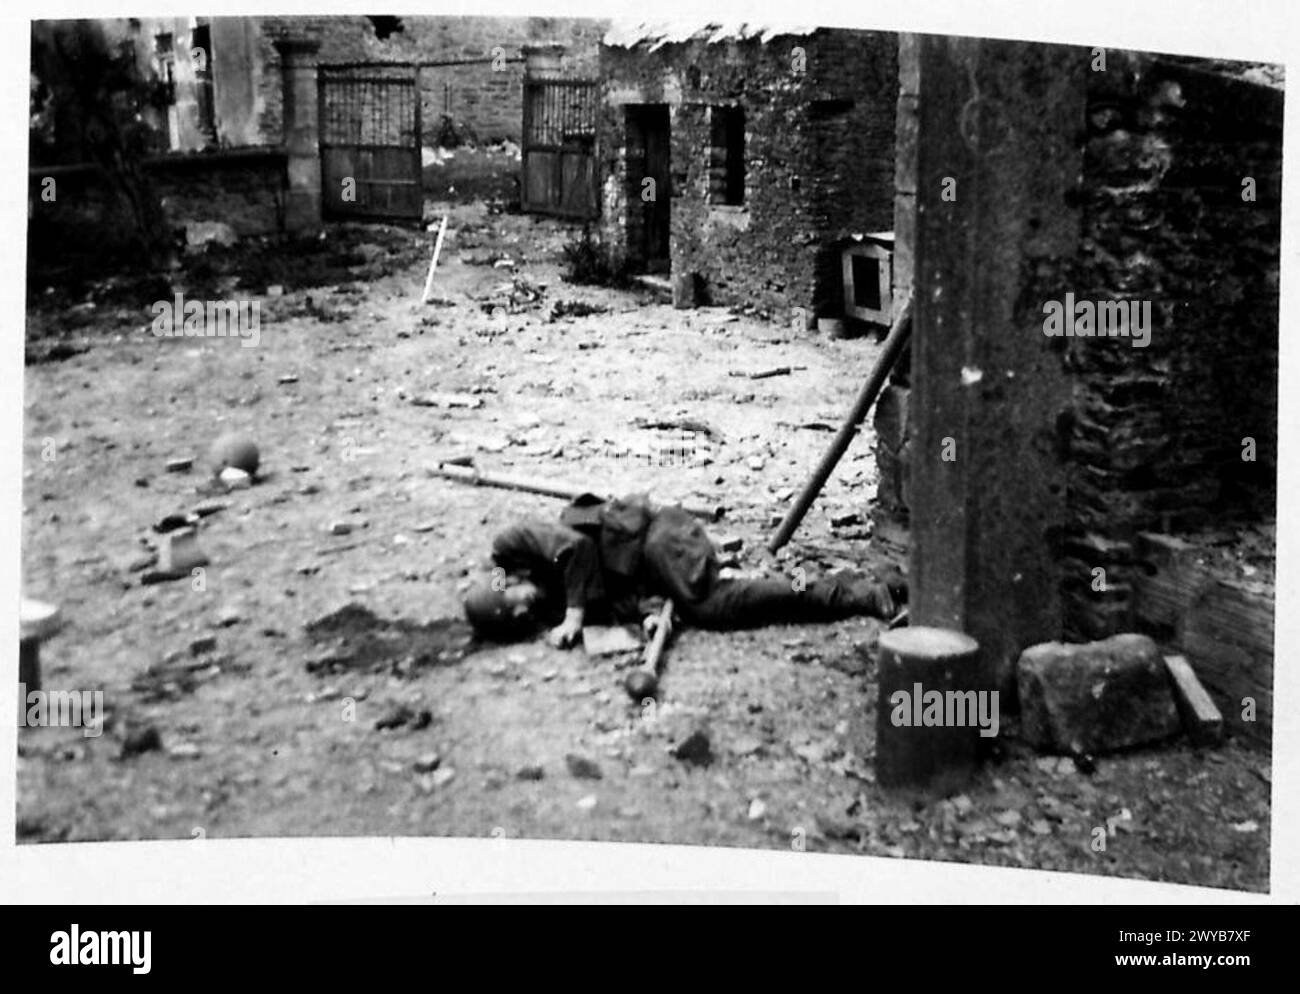 THE BRITISH ARMY IN NORTH-WEST EUROPE 1944-1945 - didascalia originale in tempo di guerra: Un tedesco morto nelle prese d'aria di settembre. Si vede che tiene in mano una granata anticarro. È simile al "Bazooka". Negativo fotografico, British Army, 21st Army Group Foto Stock